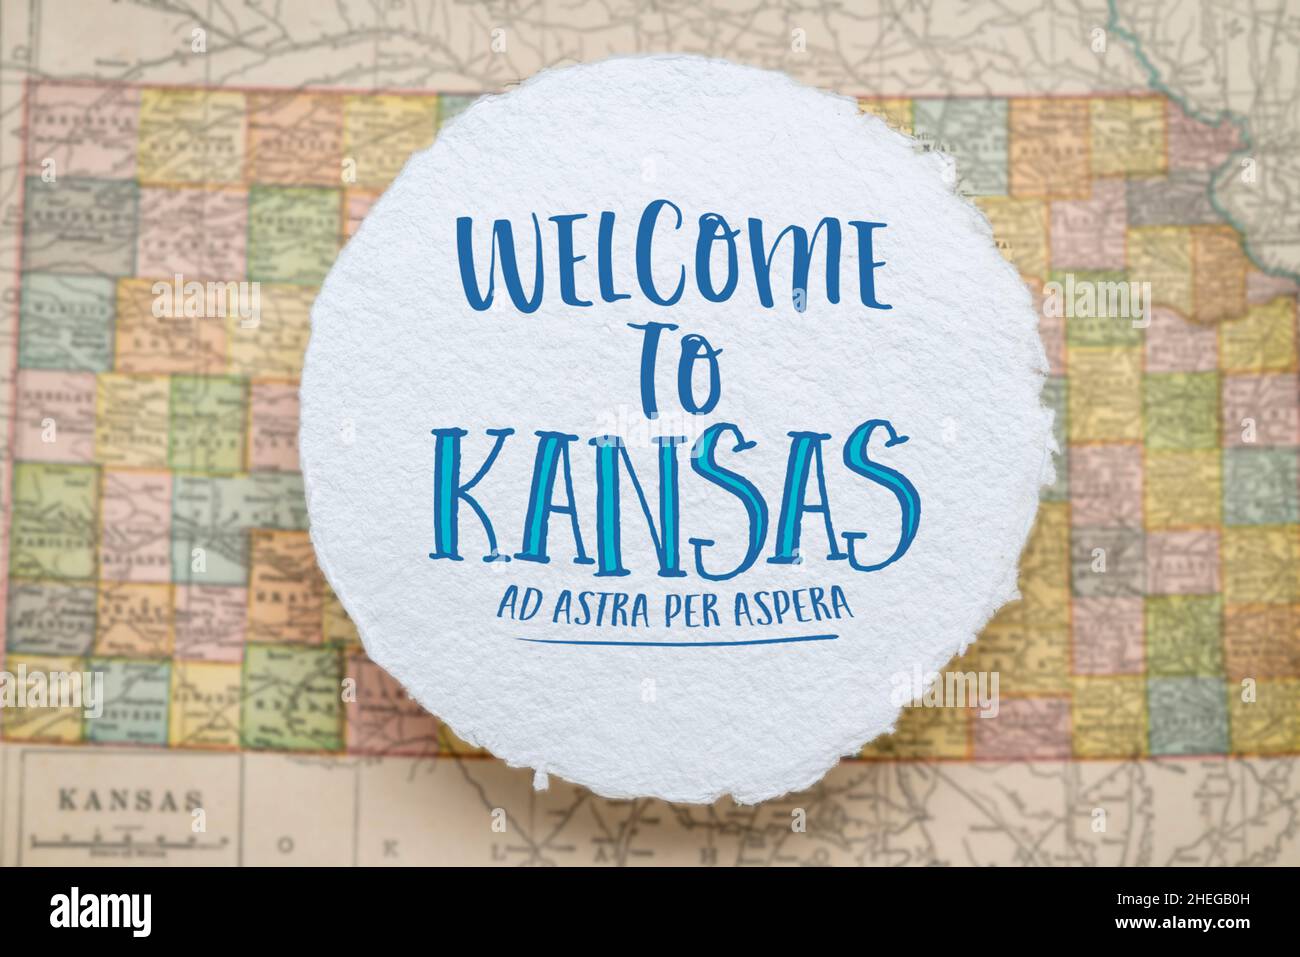 Willkommen in Kansas, ad astra per aspera - Handschrift auf einem kreisförmigen Blatt aus rohem, handgefertigtem Papier, das über einer Vintage-Unschärfe-Karte von Kansas, hospit, schwebt Stockfoto